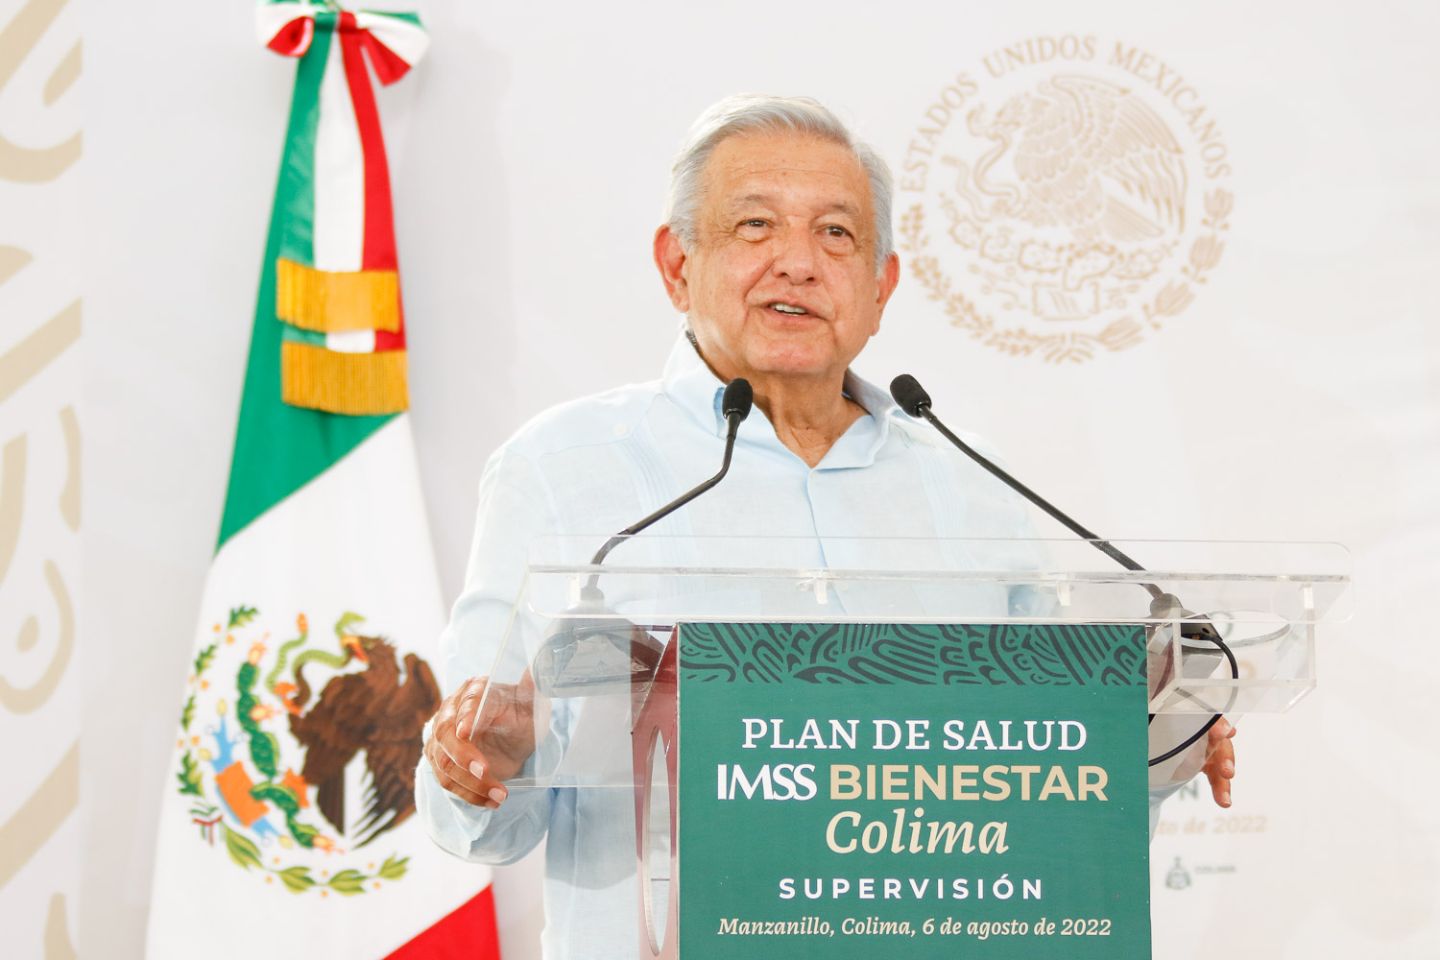 Avanza implementación de IMSS Bienestar en el país, afirma el presidente López Obrador.